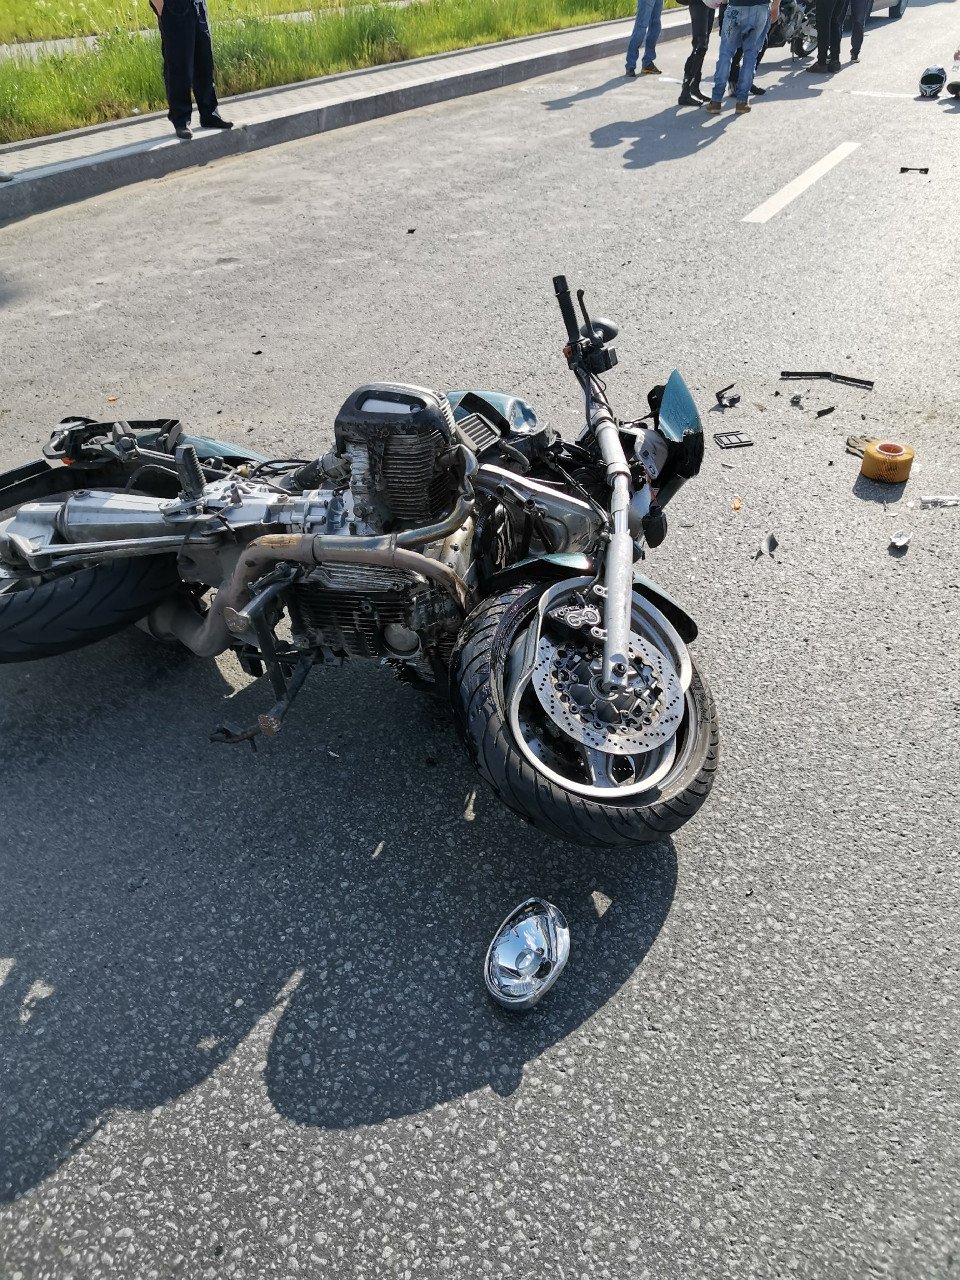 Мотоцикл после аварии. Разбитый мотоцикл диабло.